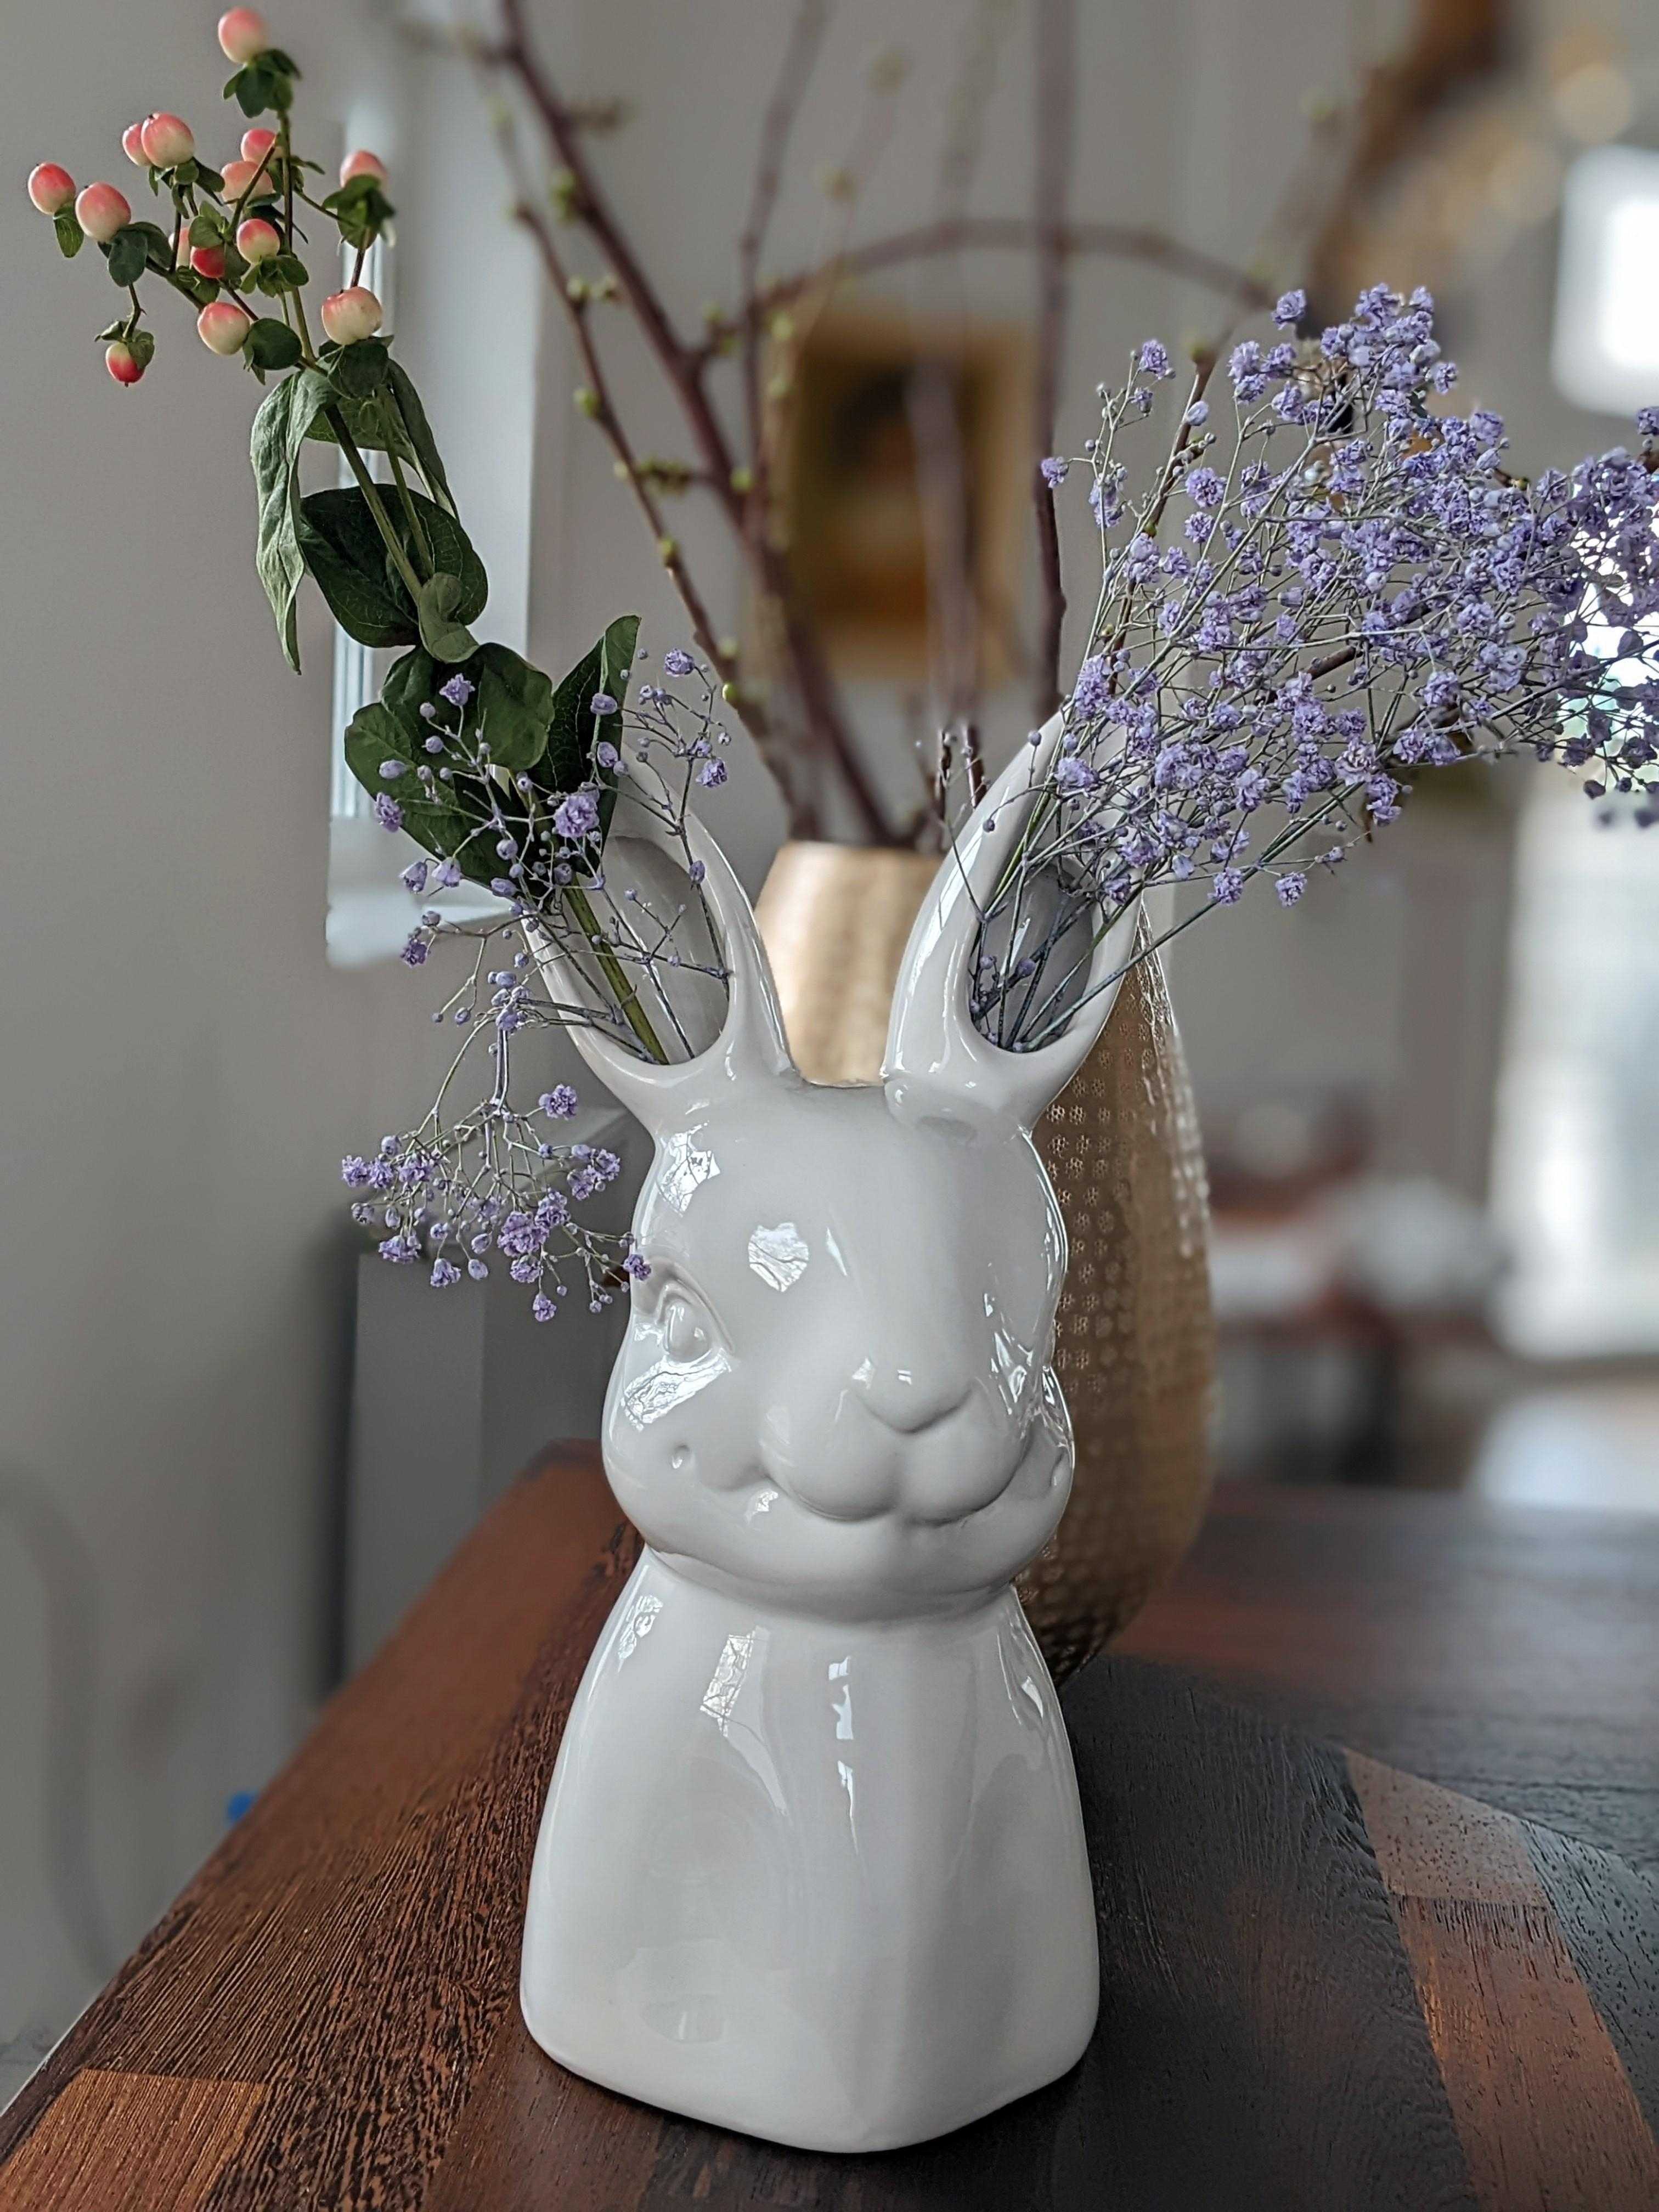 Jetzt schaut euch diese 🐰Lady an.💙
Blumenvase und frische Blümchen. 
#vase #ostern #osterdeko #frühling